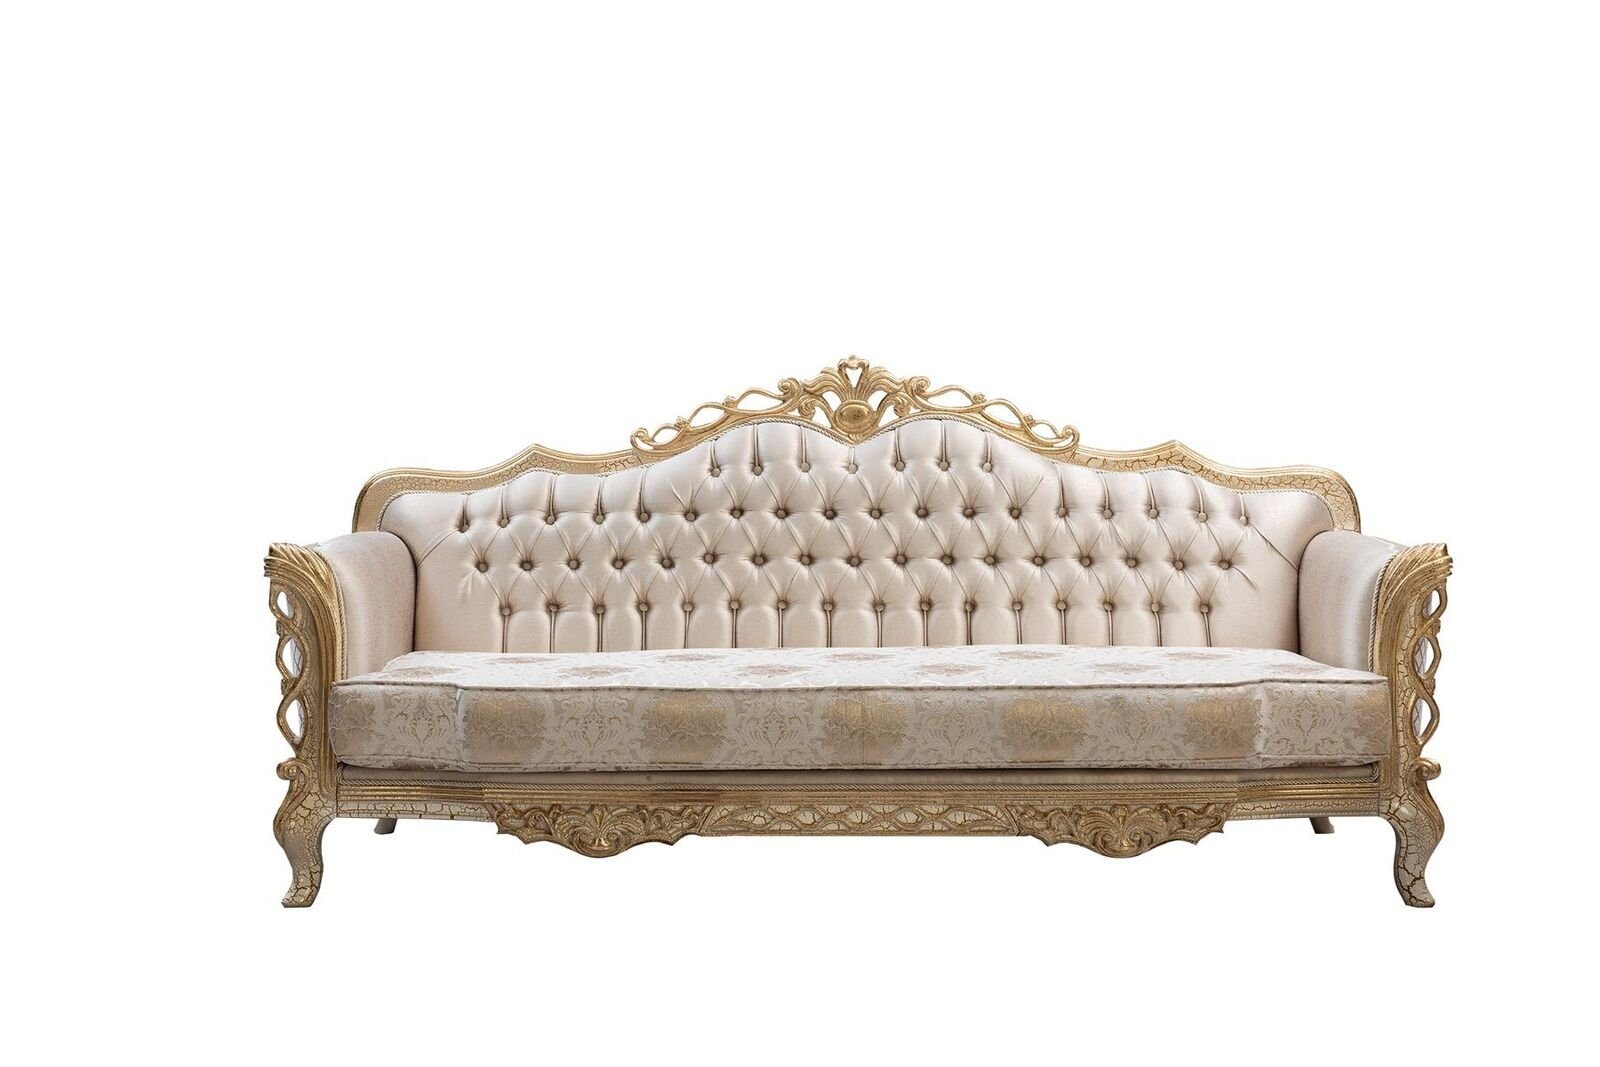 JVmoebel Chesterfield-Sofa Sofa 3 Sitzer Wohnzimmer Couch Klassiker Design Luxus Sofa Textil Neu, 1 Teile, Made in Europe